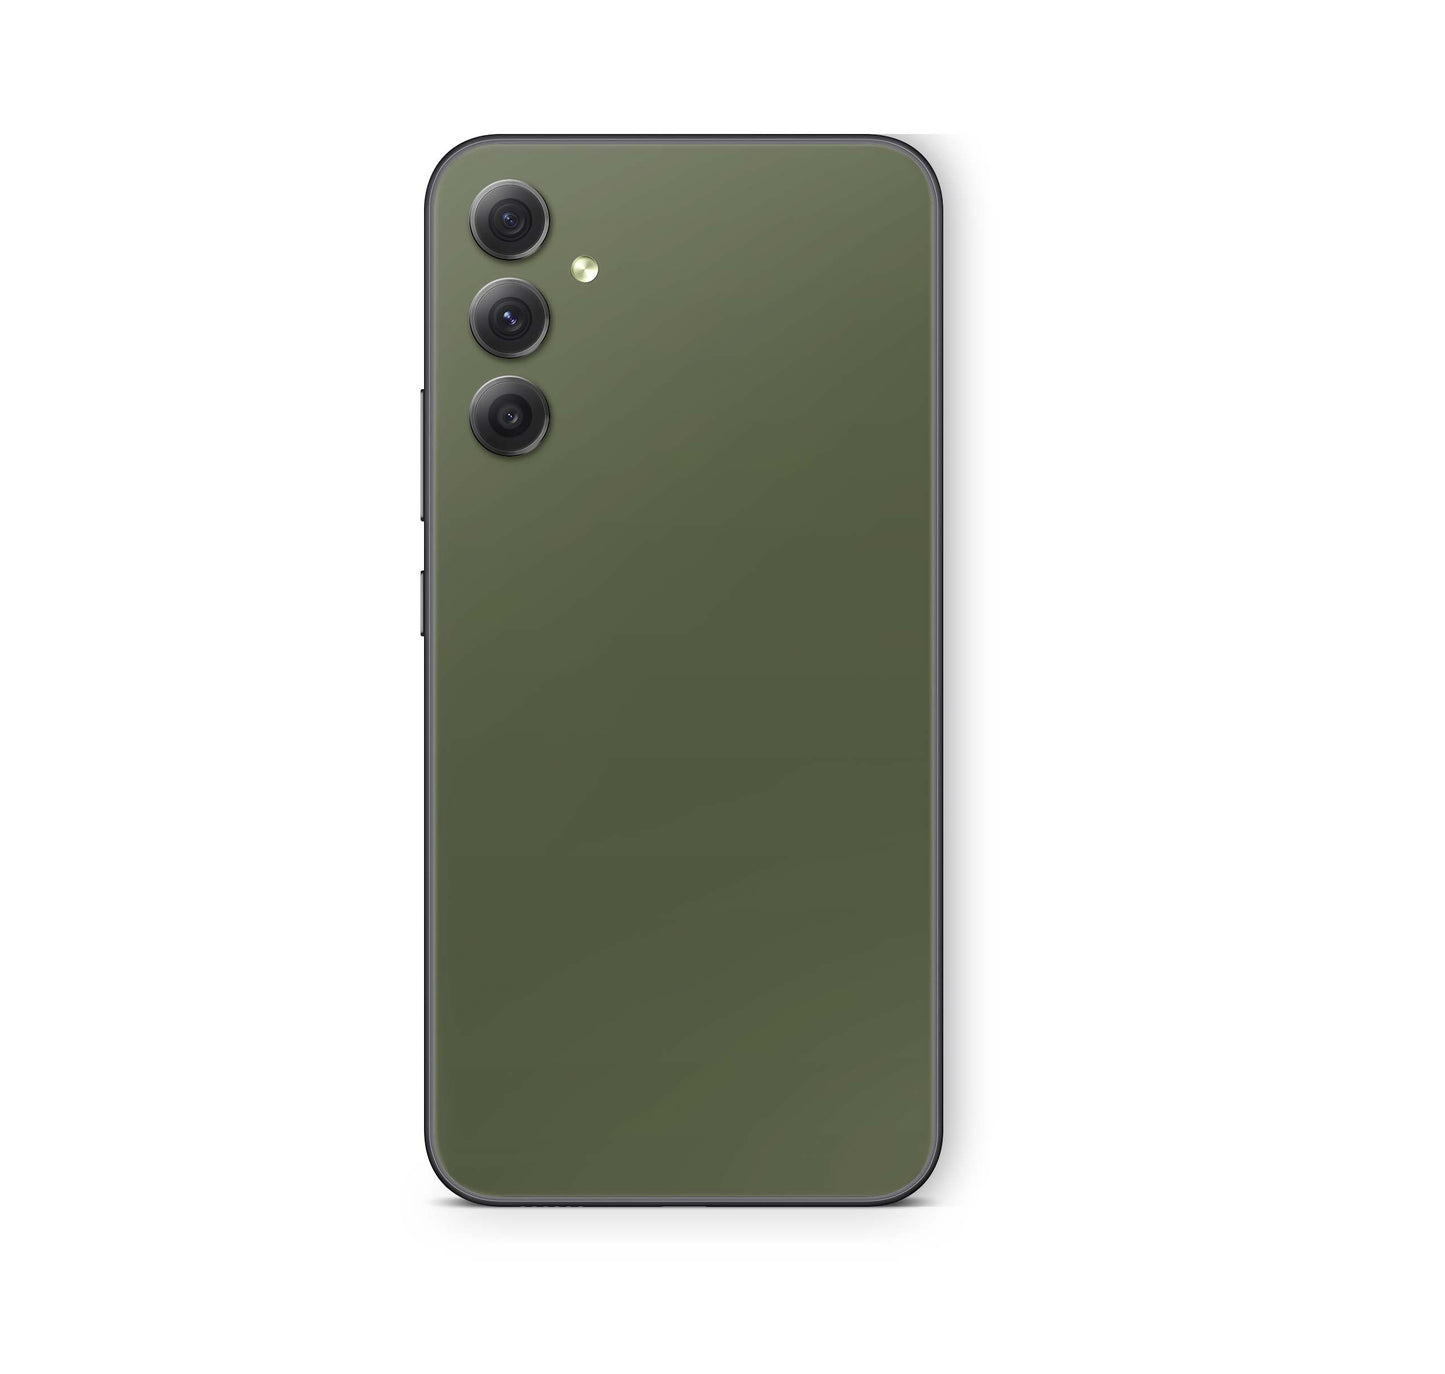 Samsung Galaxy S23 FE Skin Schutzfolie Aufkleber Skins Design Solid state olive Elektronik-Sticker & -Aufkleber skins4u   